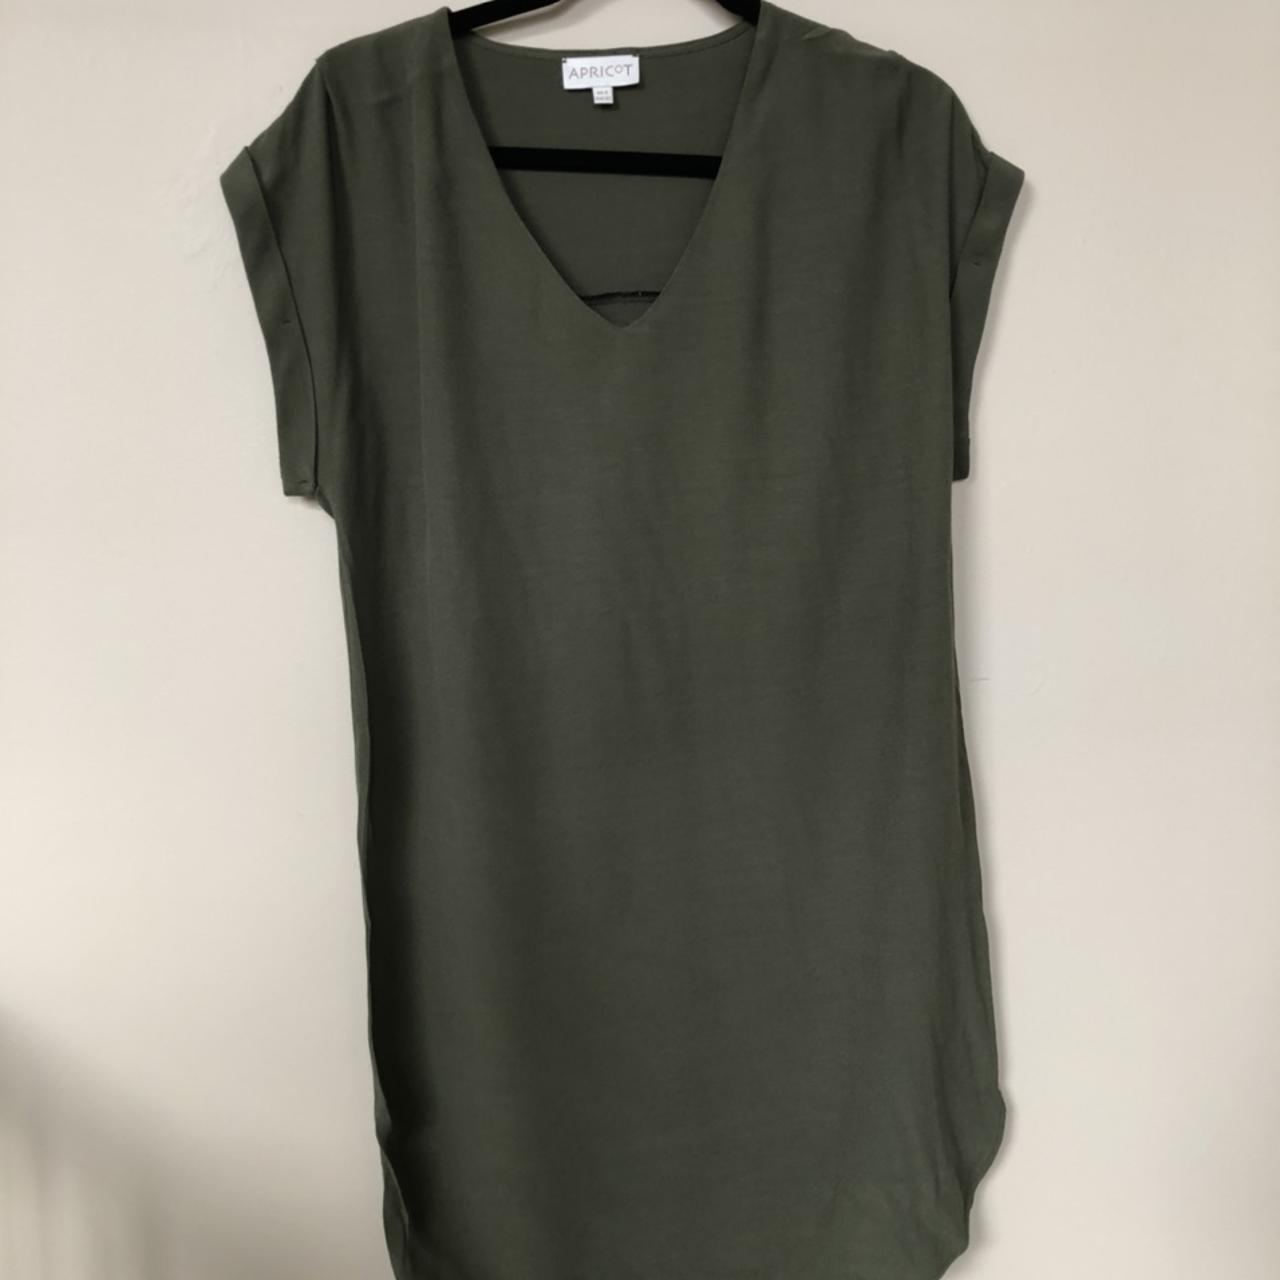 Product Image 1 - Apricot shirt dress.
New, worn a